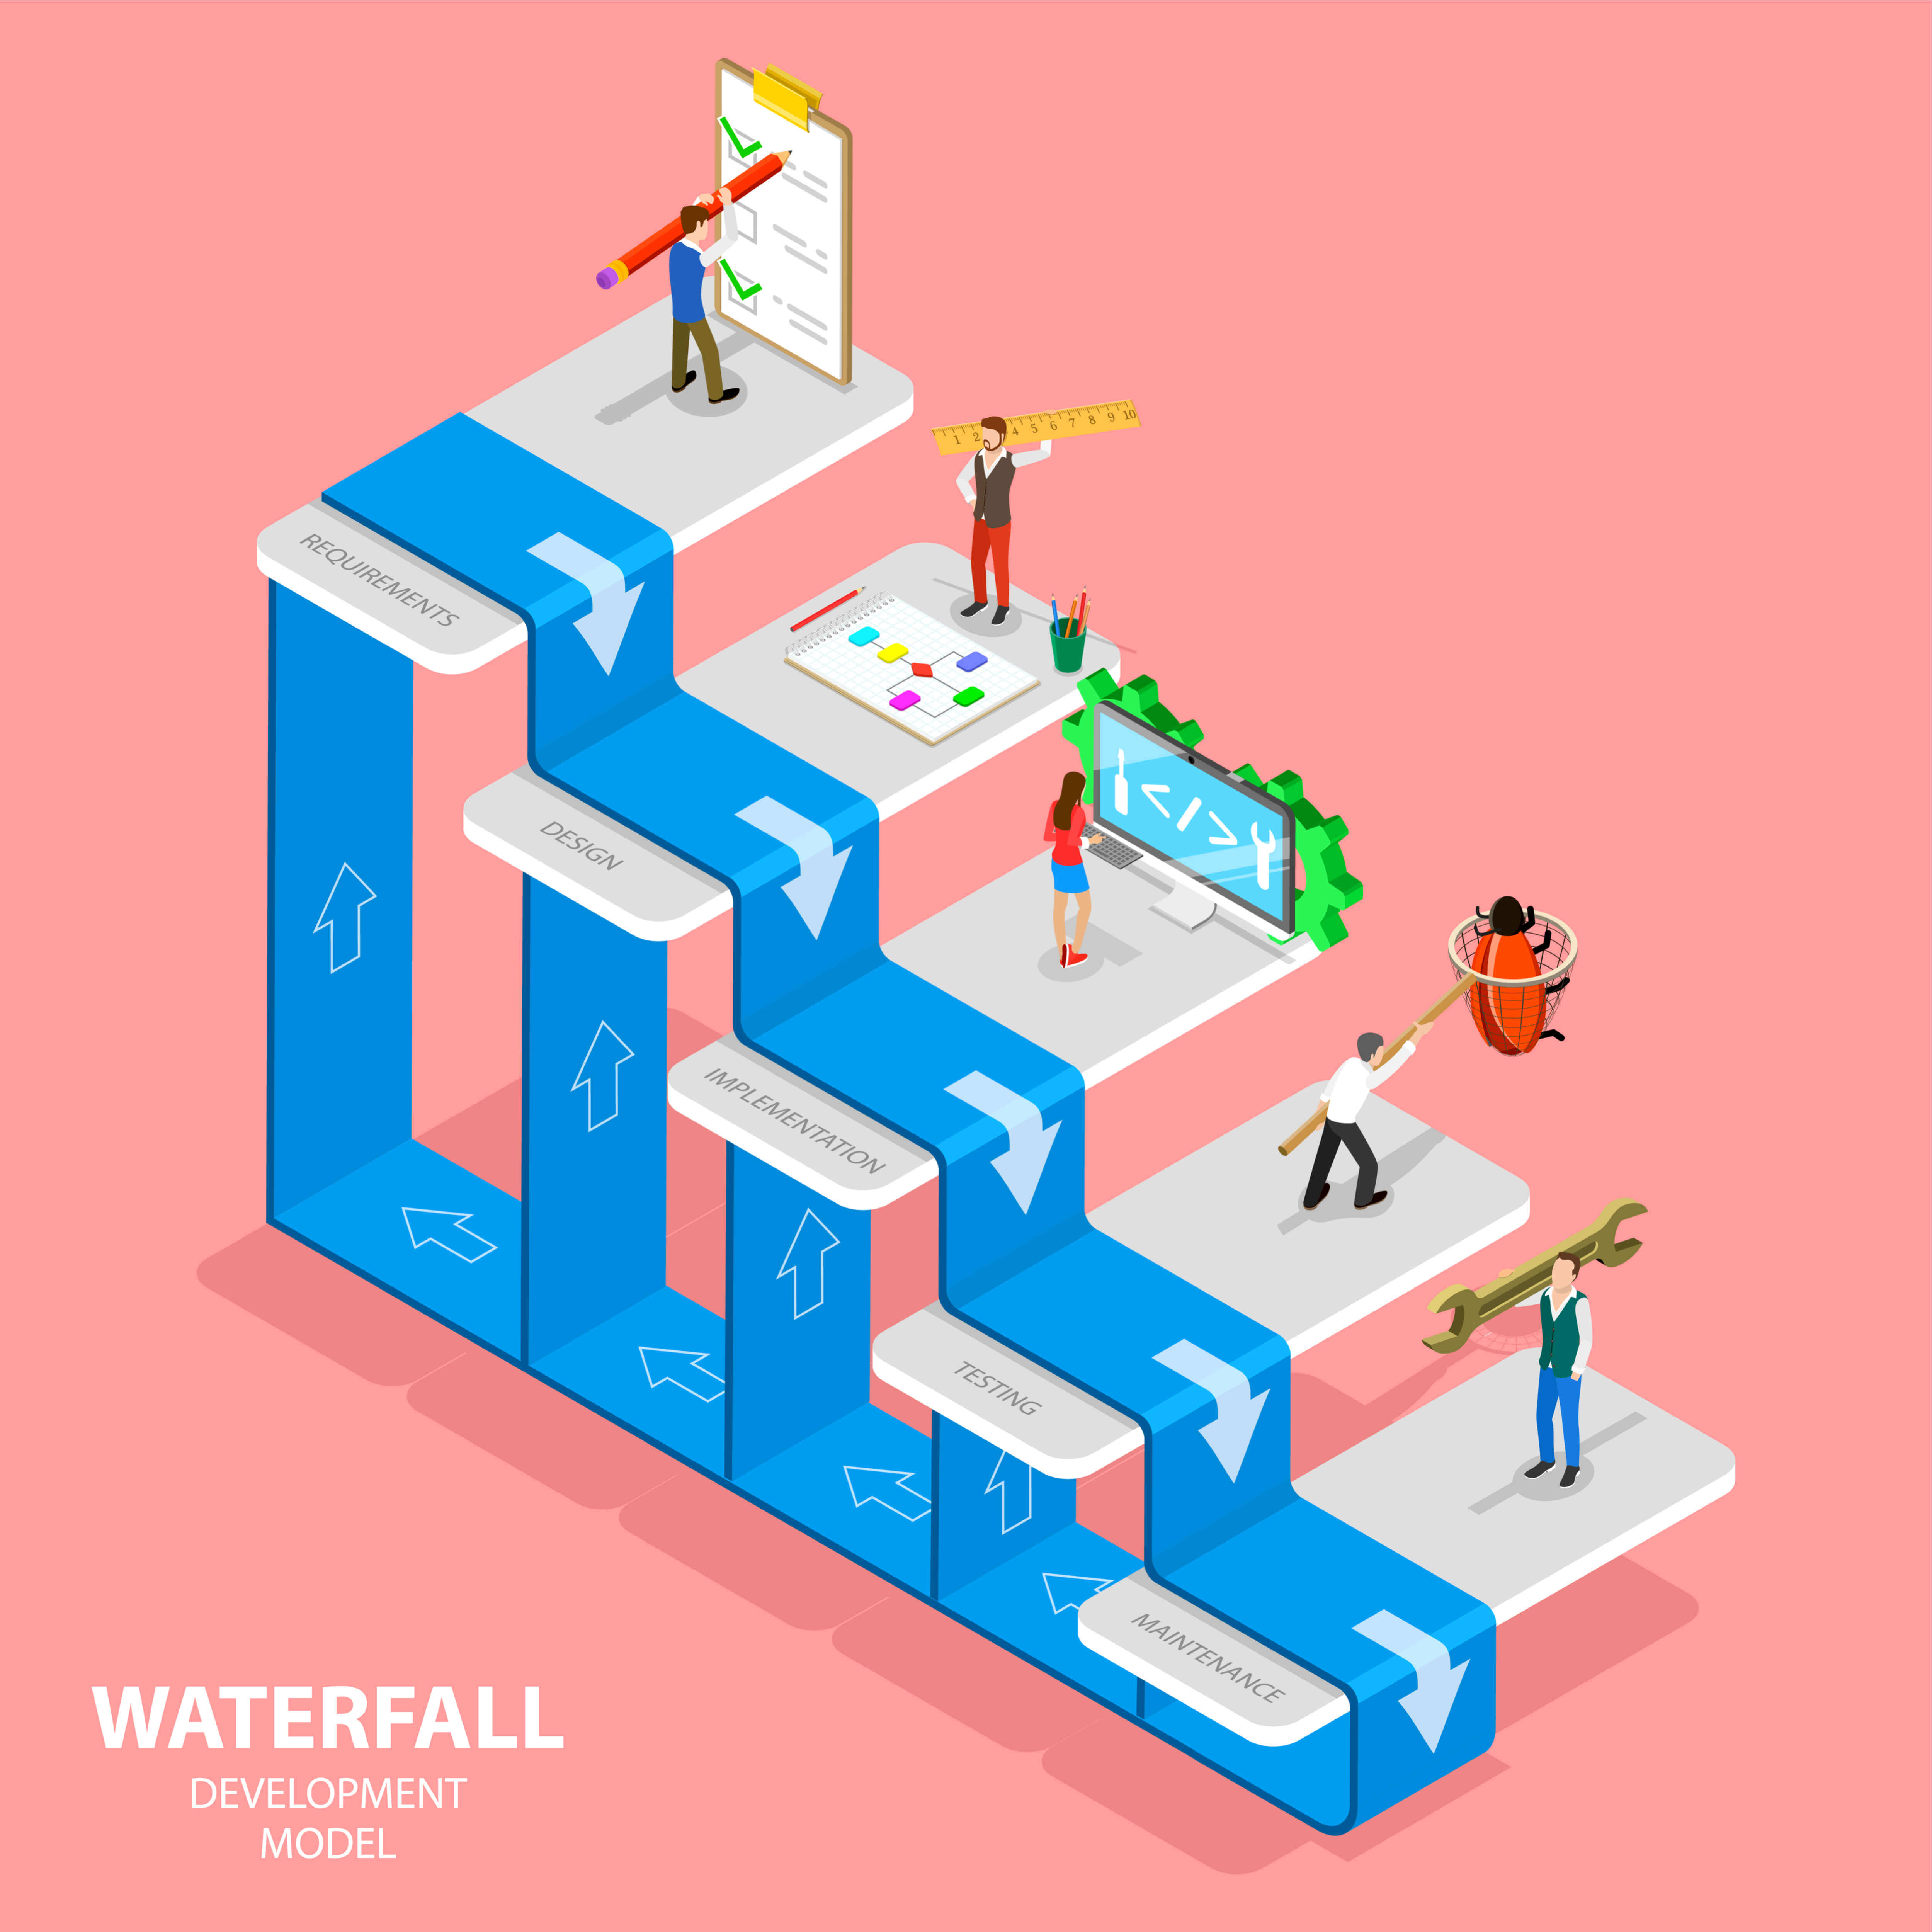 waterfall asset management news